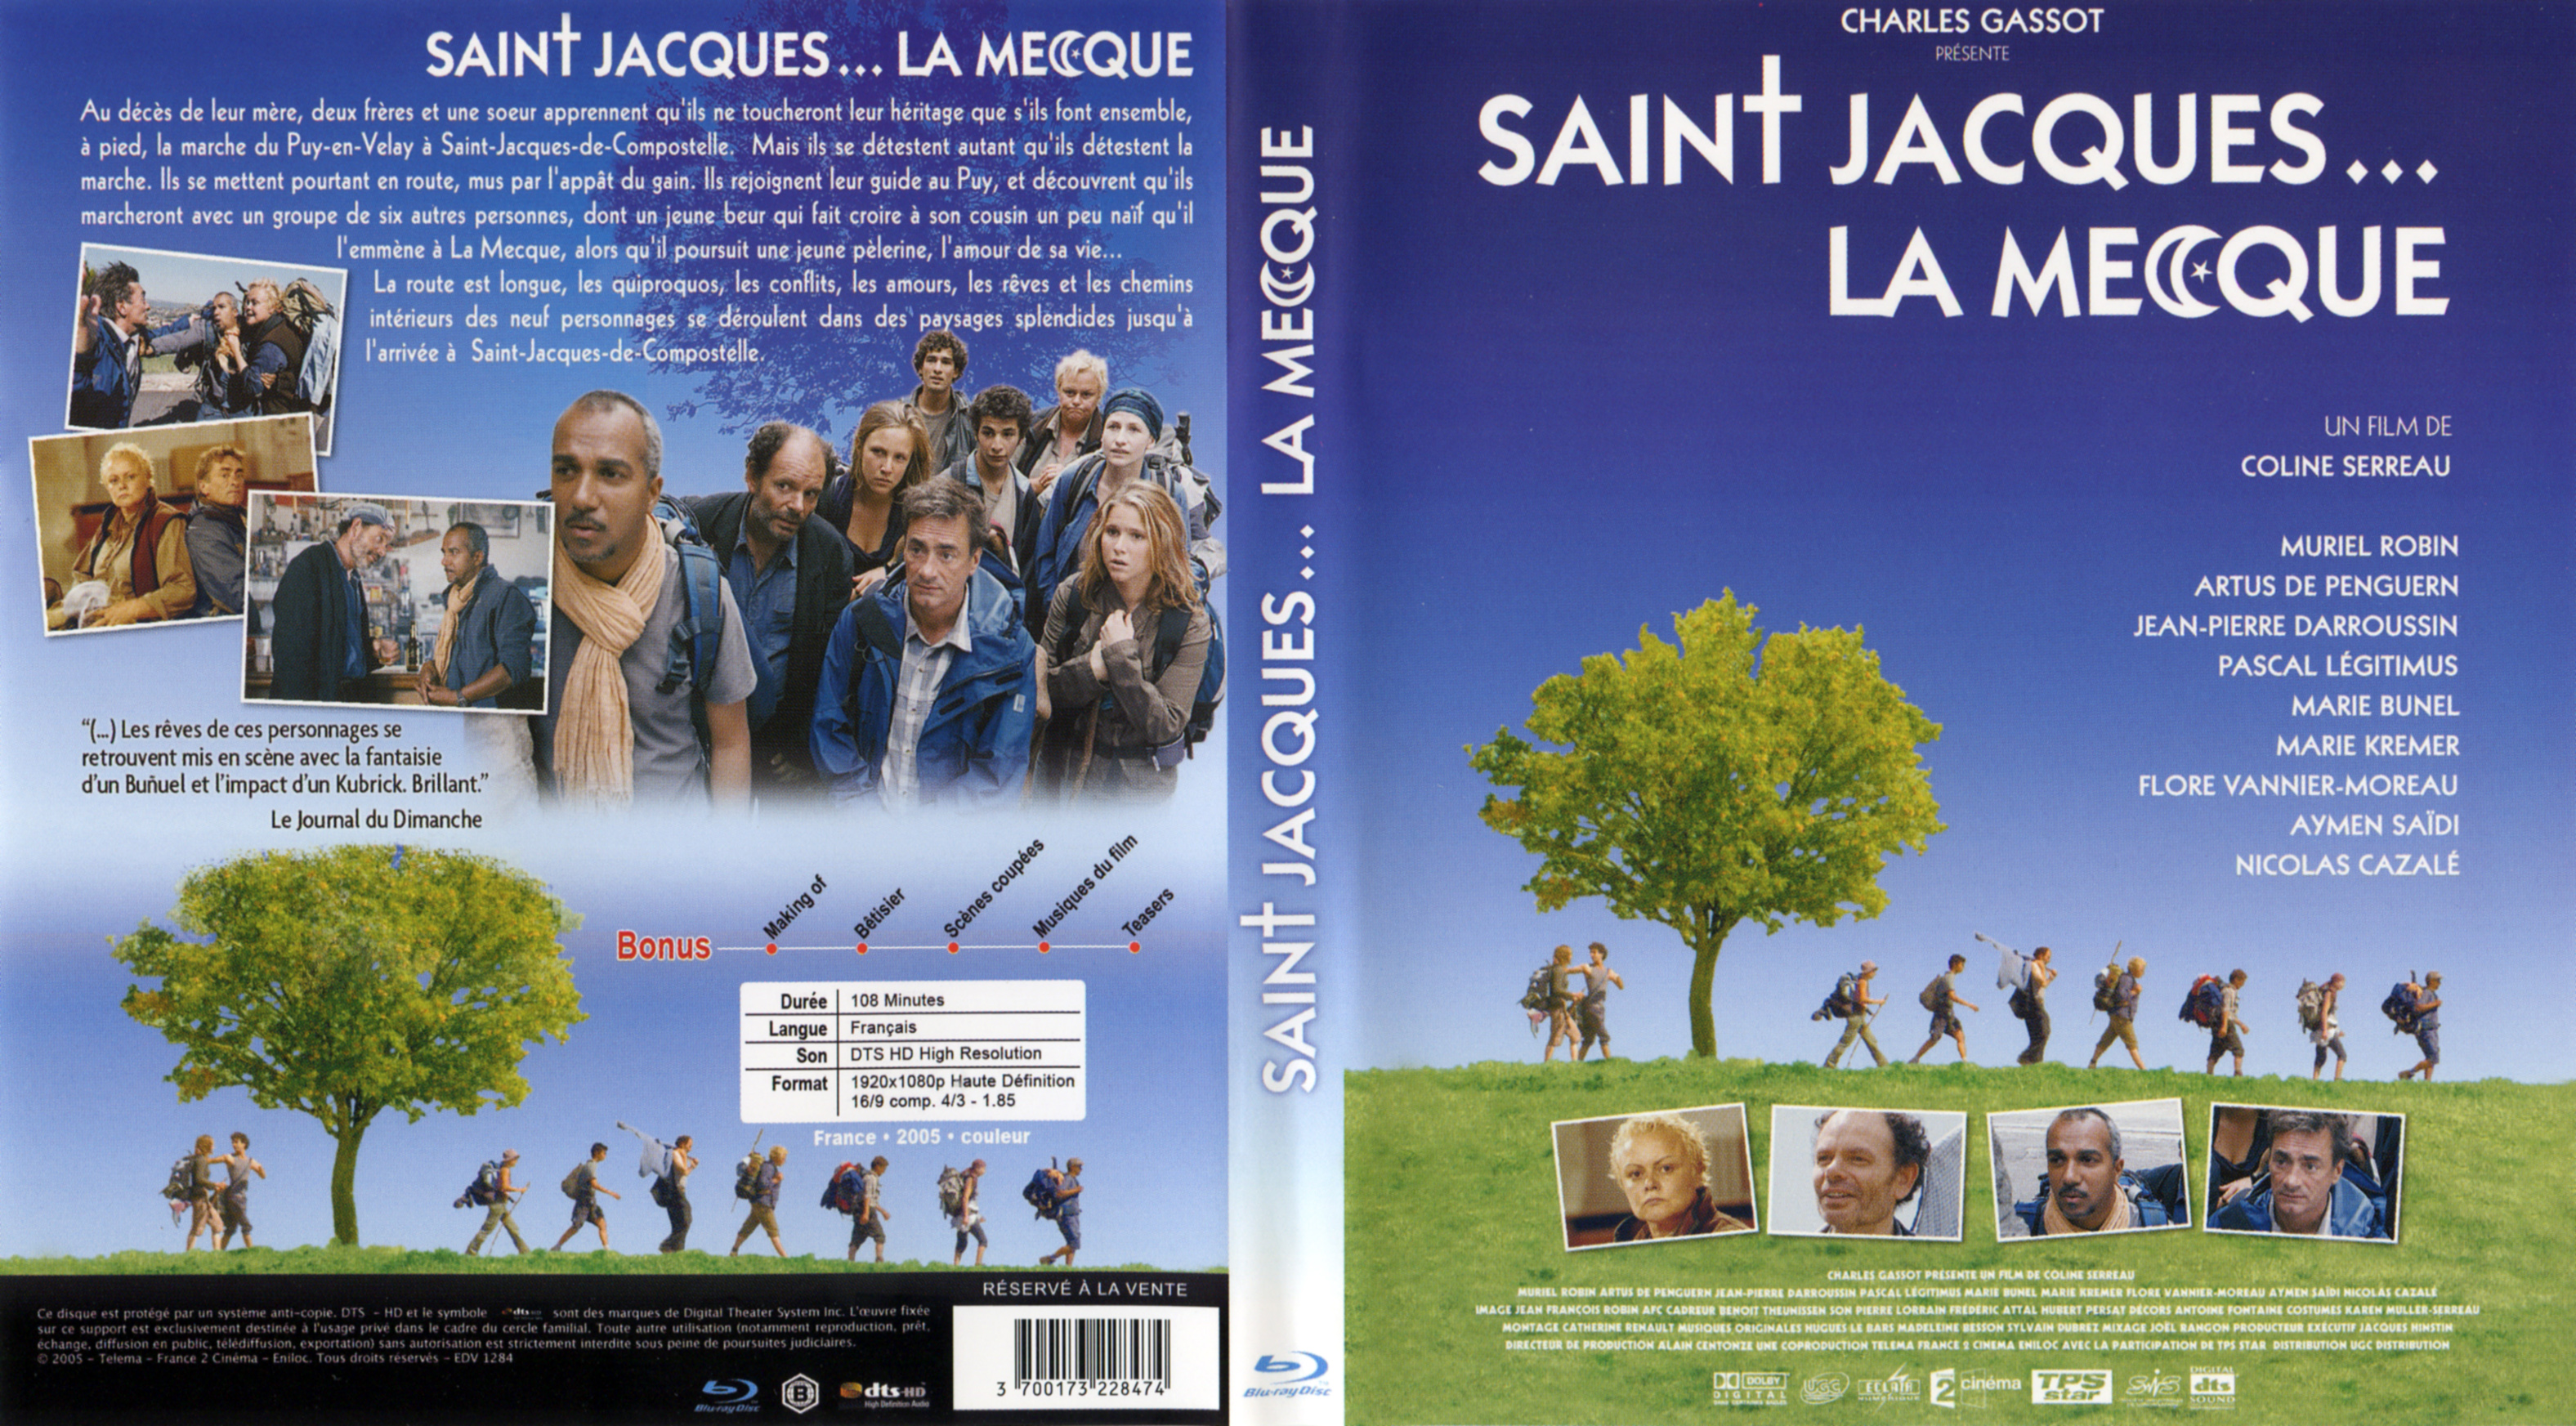 Jaquette DVD Saint-Jacques la mecque (BLU-RAY)